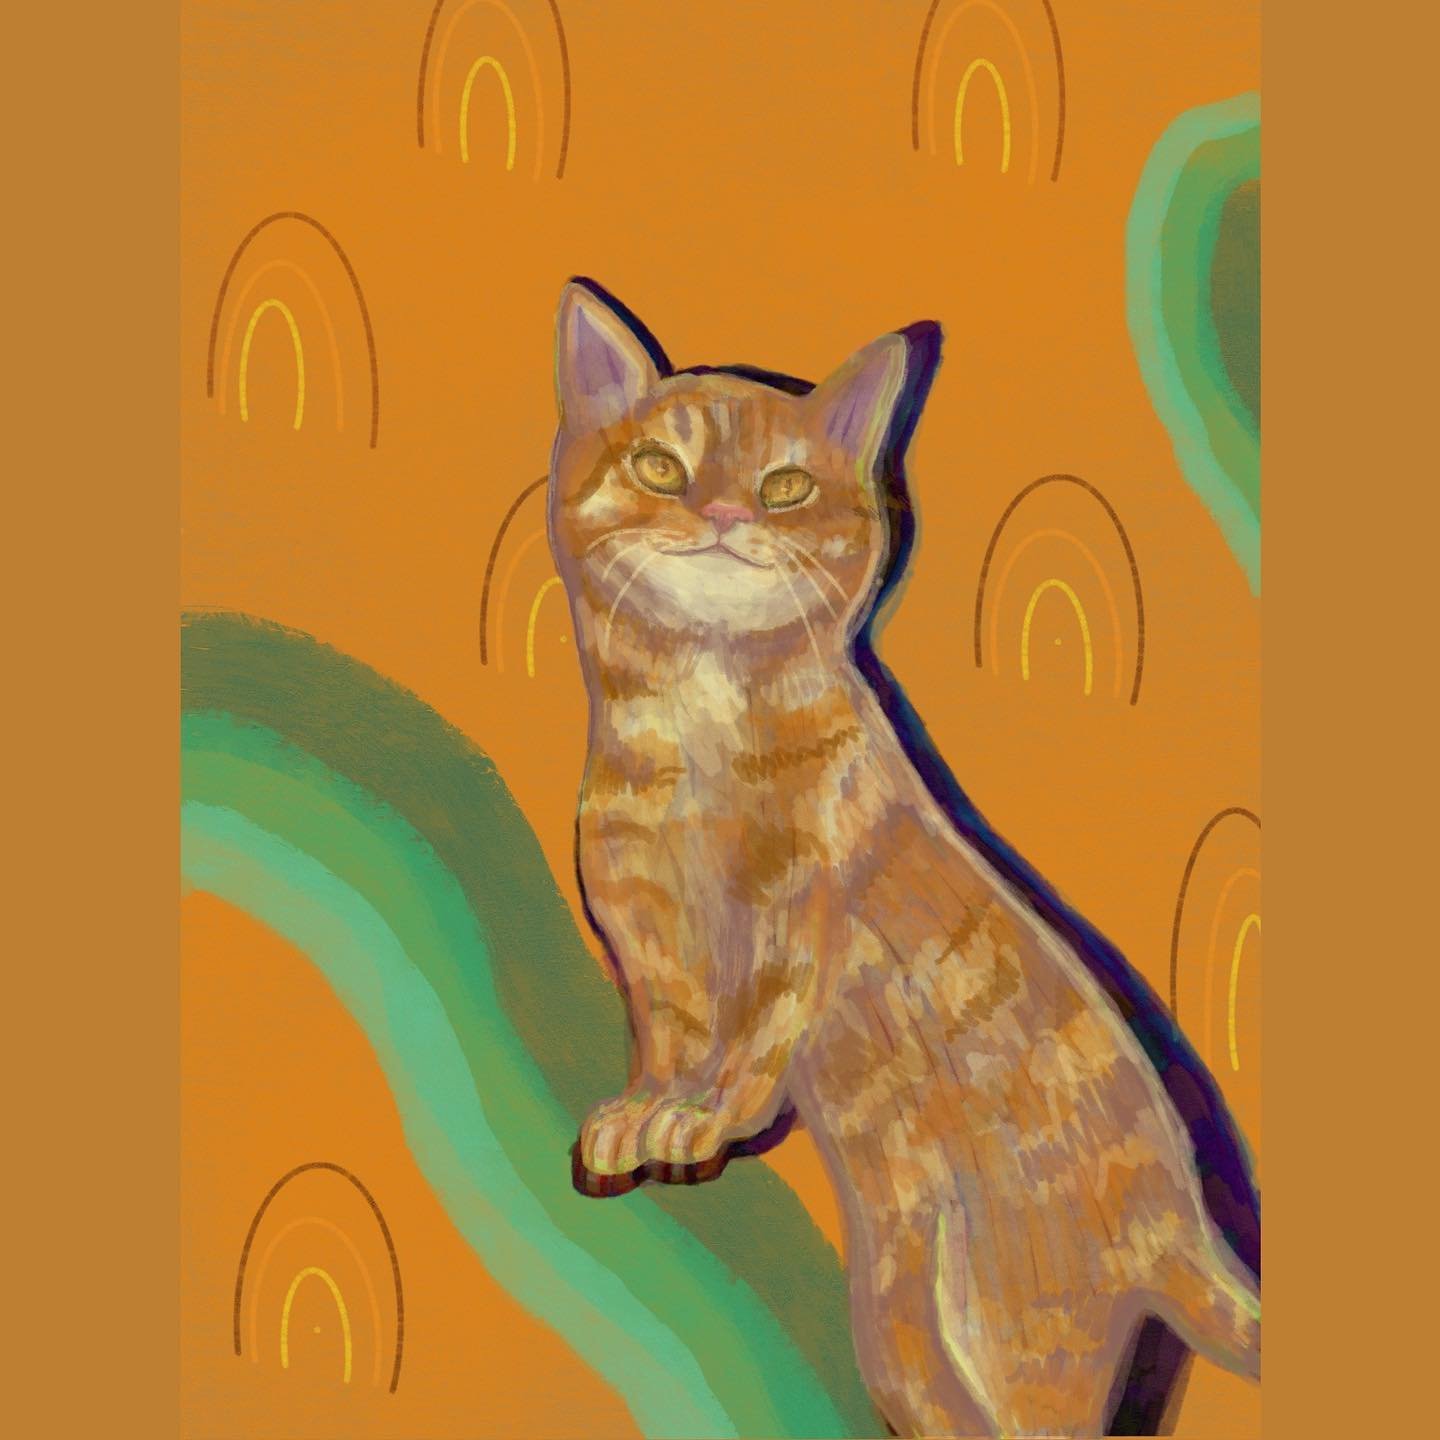 Orange cat vibes

#cat #procreate #digitalart #illustration #austinartist #atxartist #illustrator #artistsoninstagram #artwork #orangecat